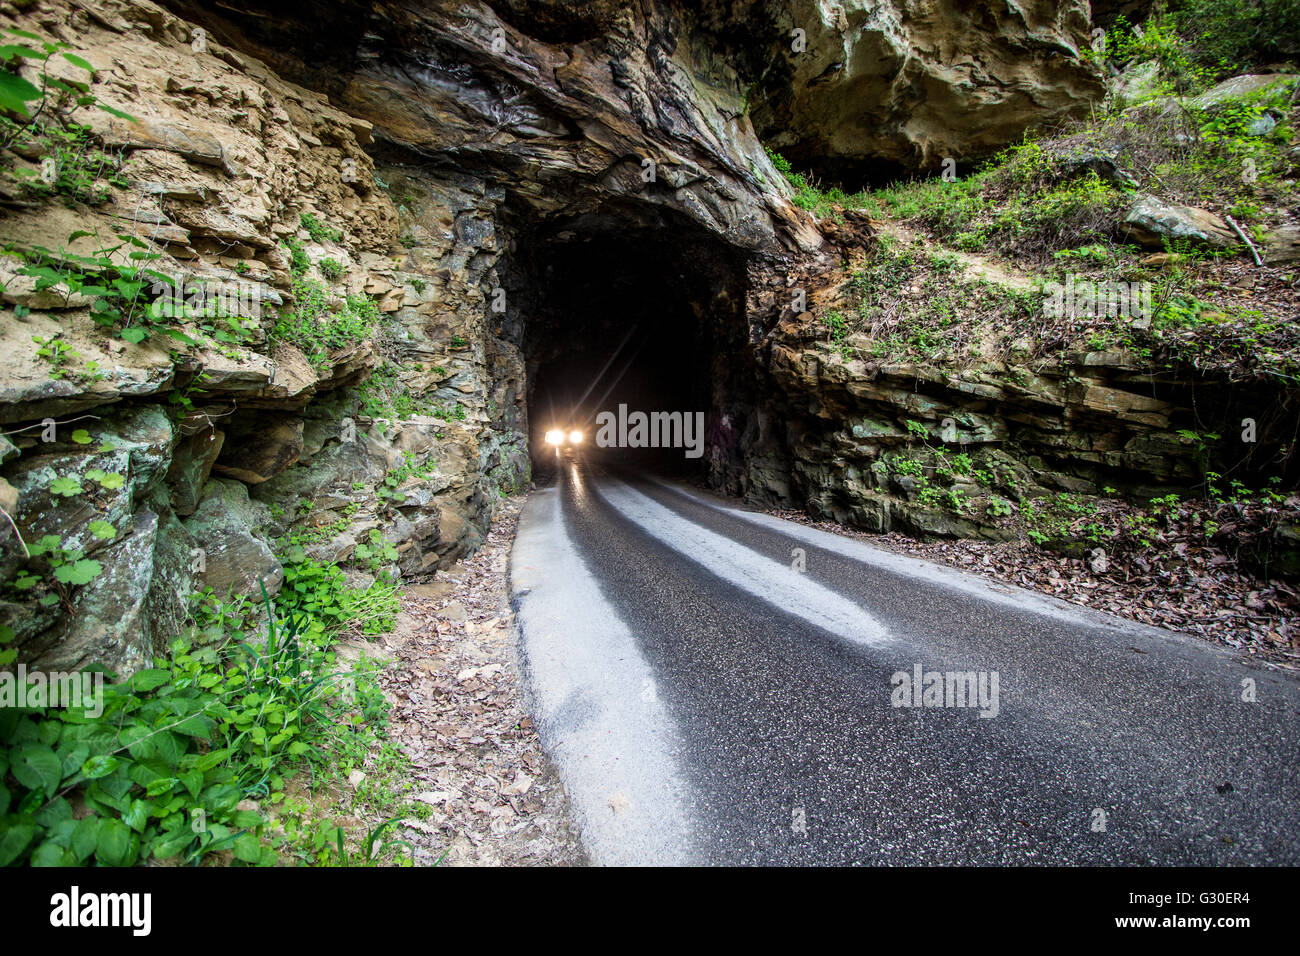 Die 900 Fuß Nada Tunnel in der Red River Gorge in Kentucky. Für den Verkehr geöffnet, die erschütternde Einweg-Tunnel ist eine Durchgangsstraße für Stockfoto